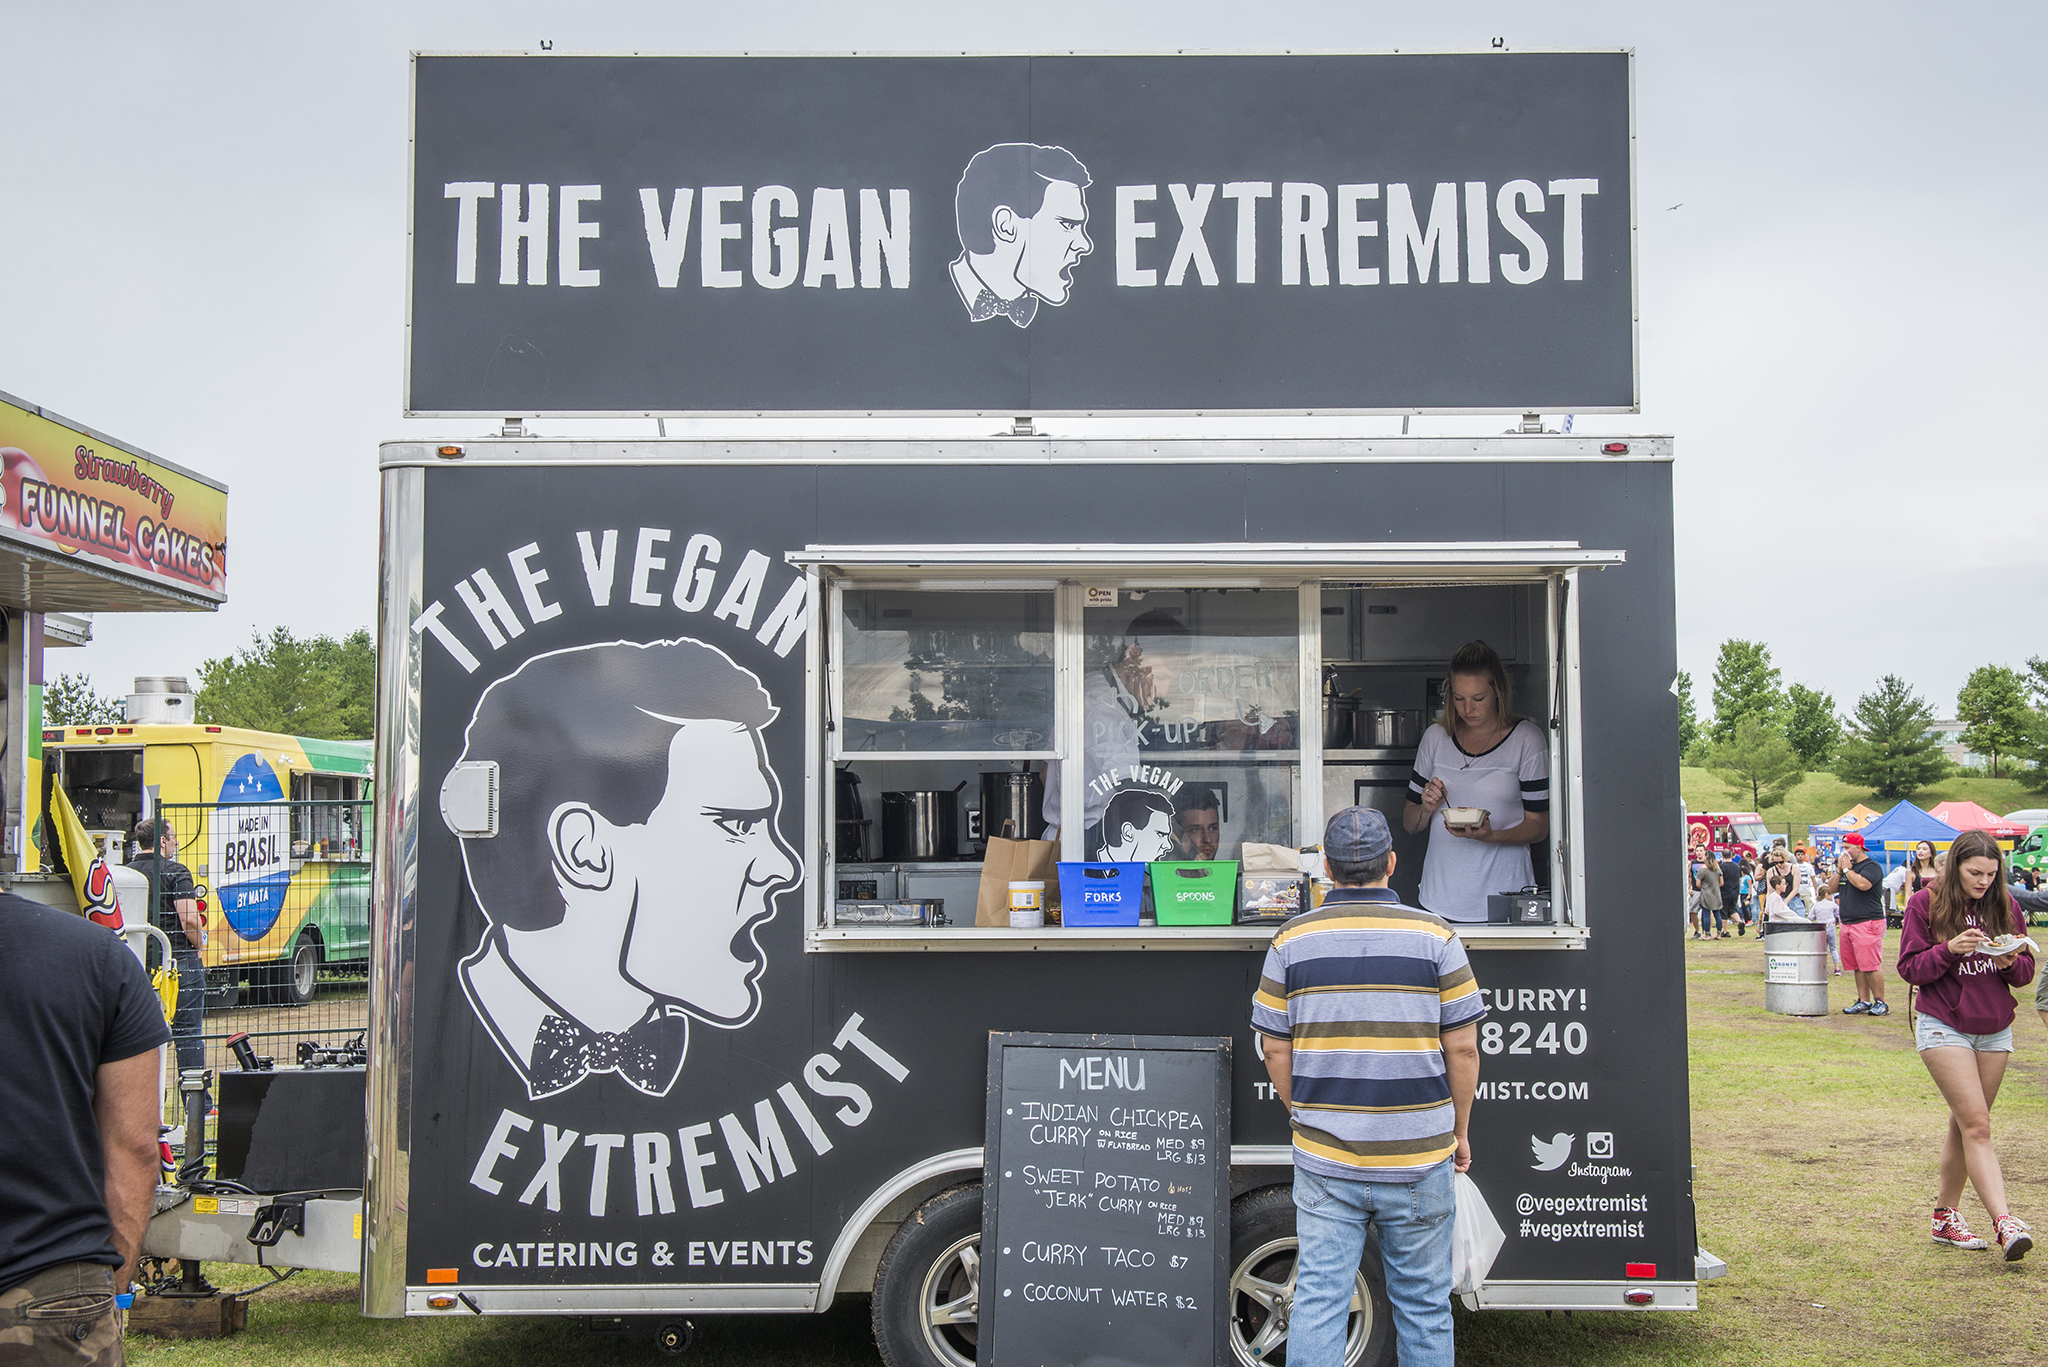 The Vegan Extremist